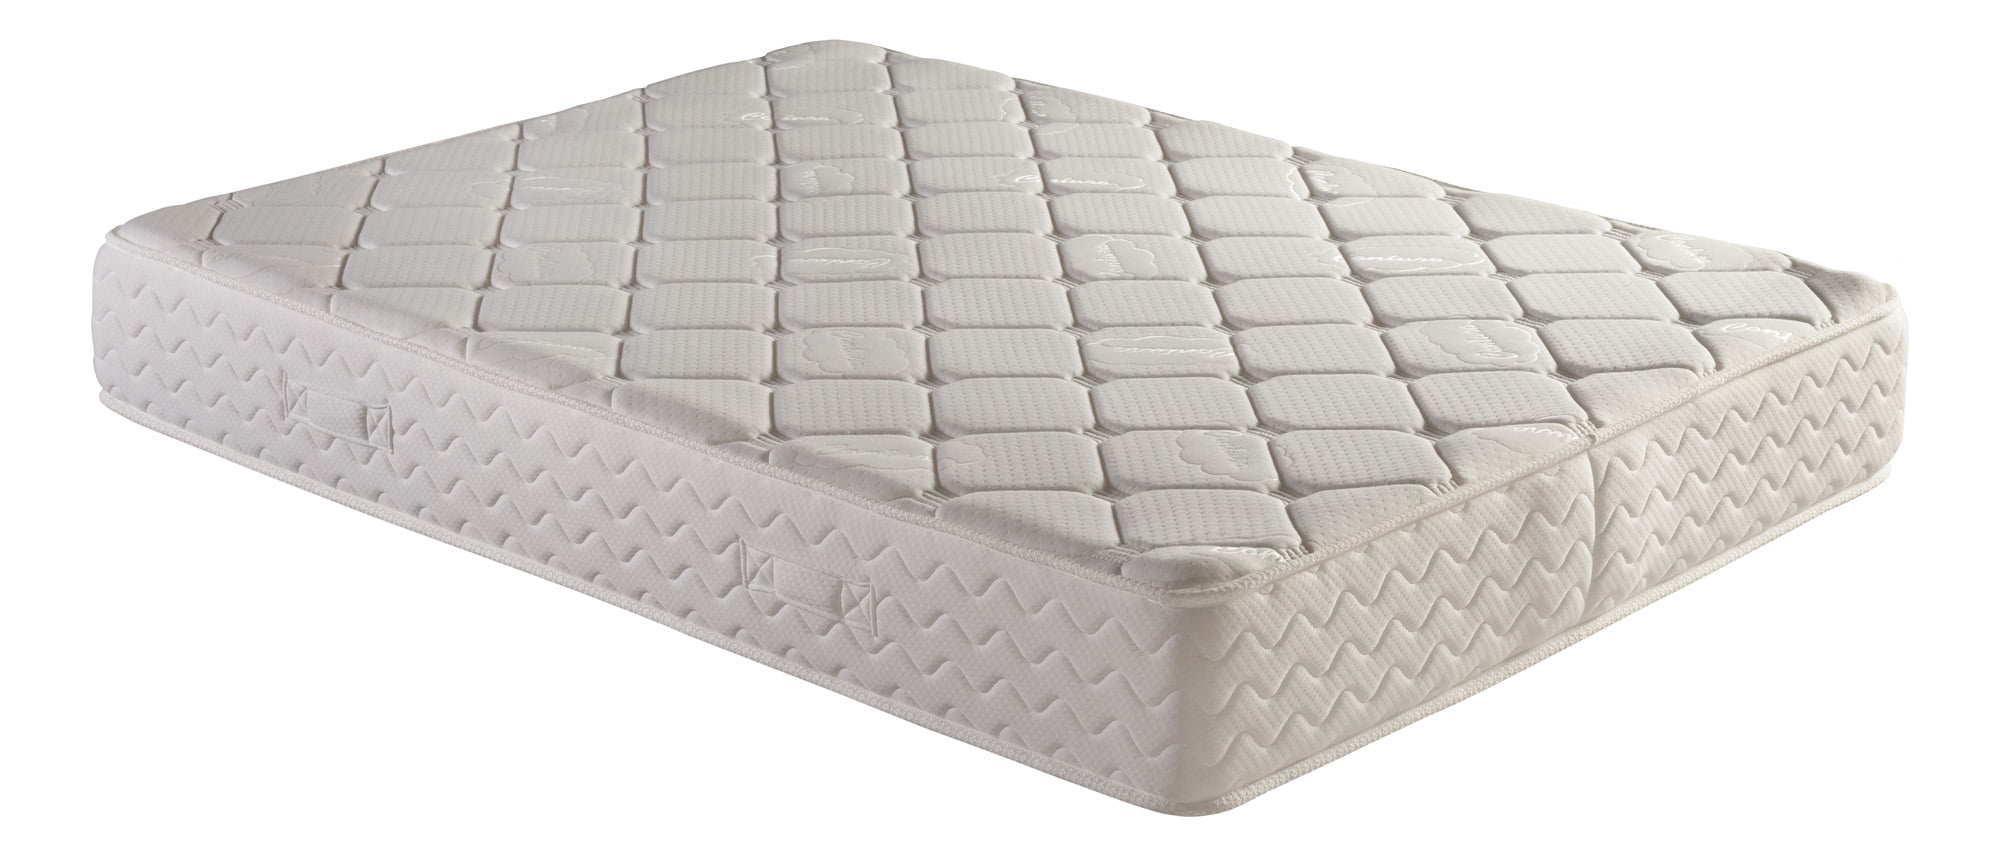 best independent coil mattress